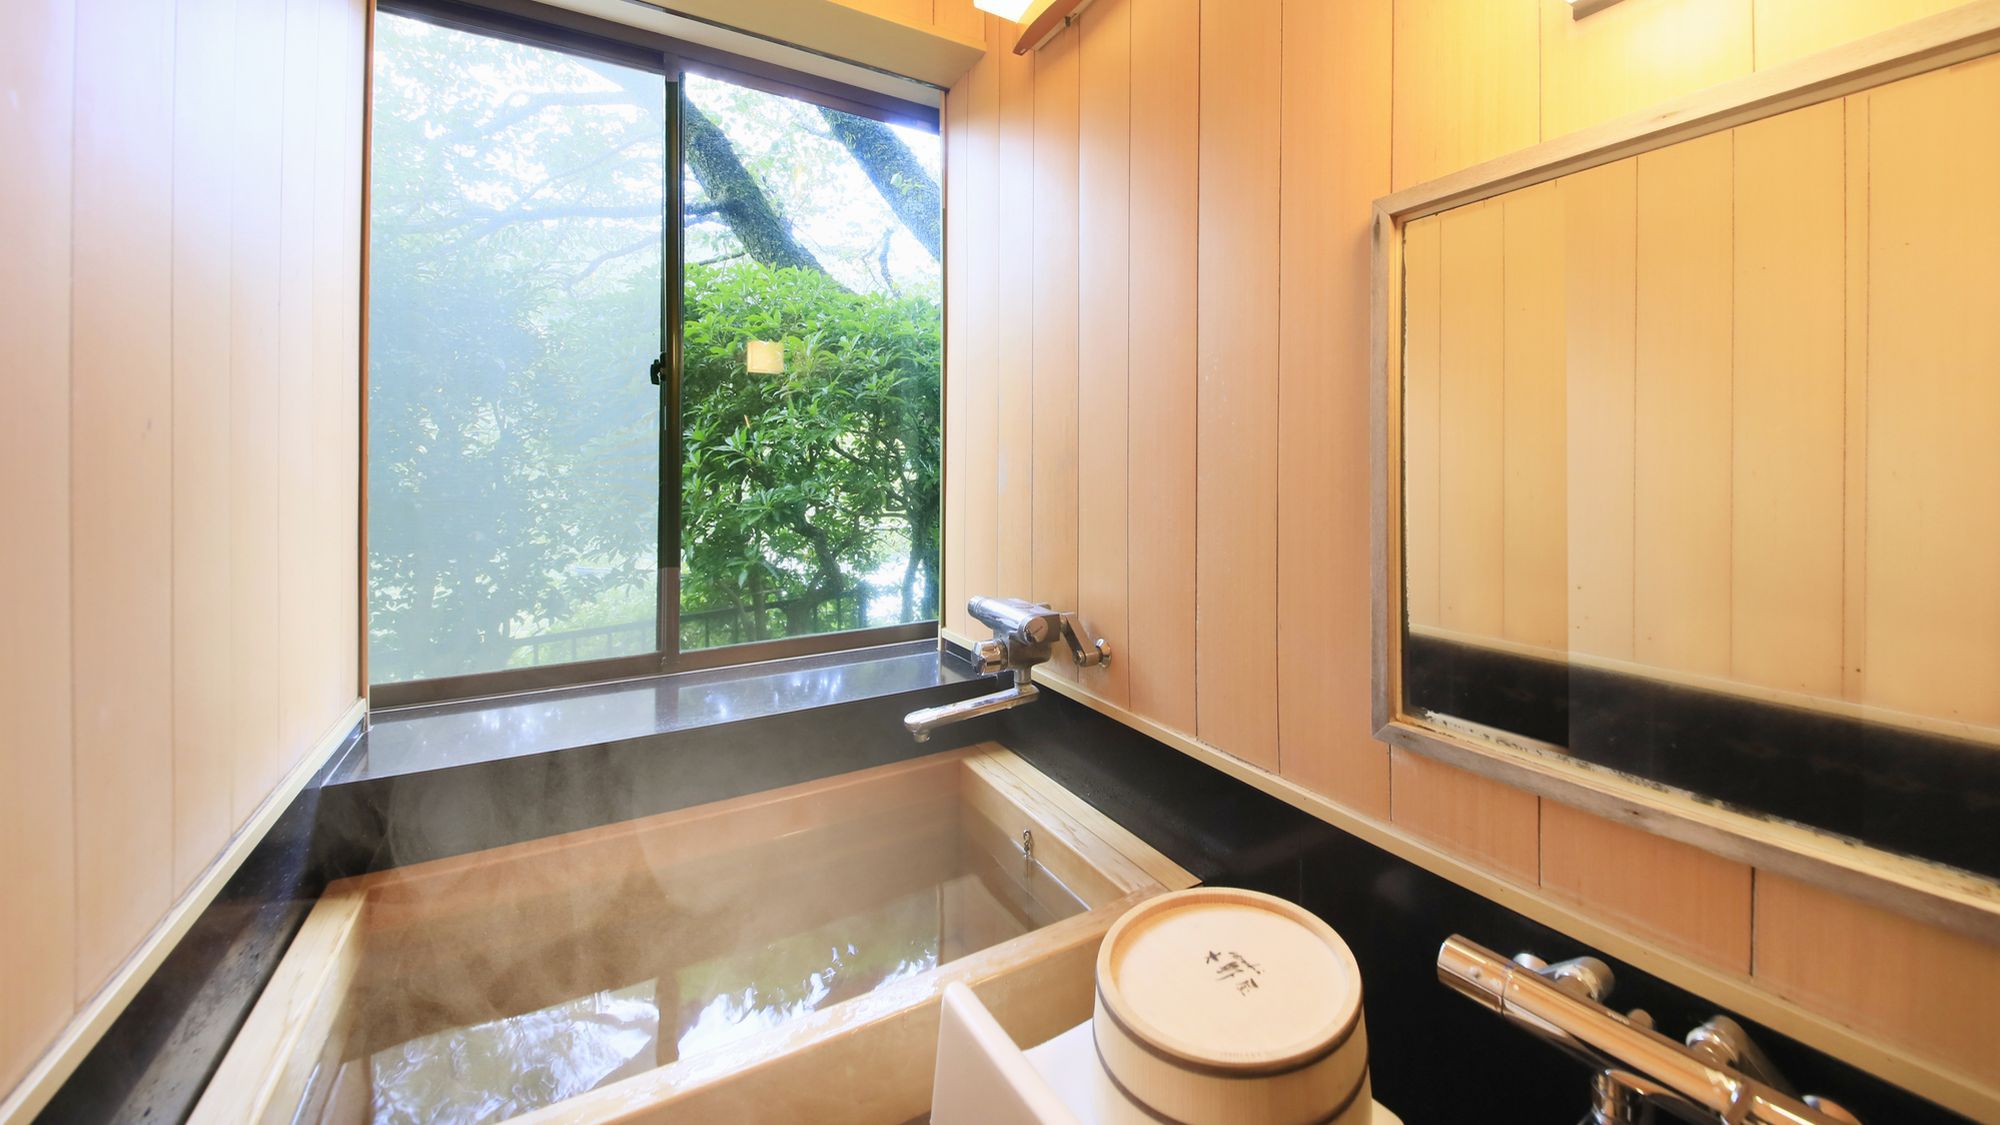 【B】源泉檜風呂・トイレ付標準和室(8畳タイプ) 客室一例